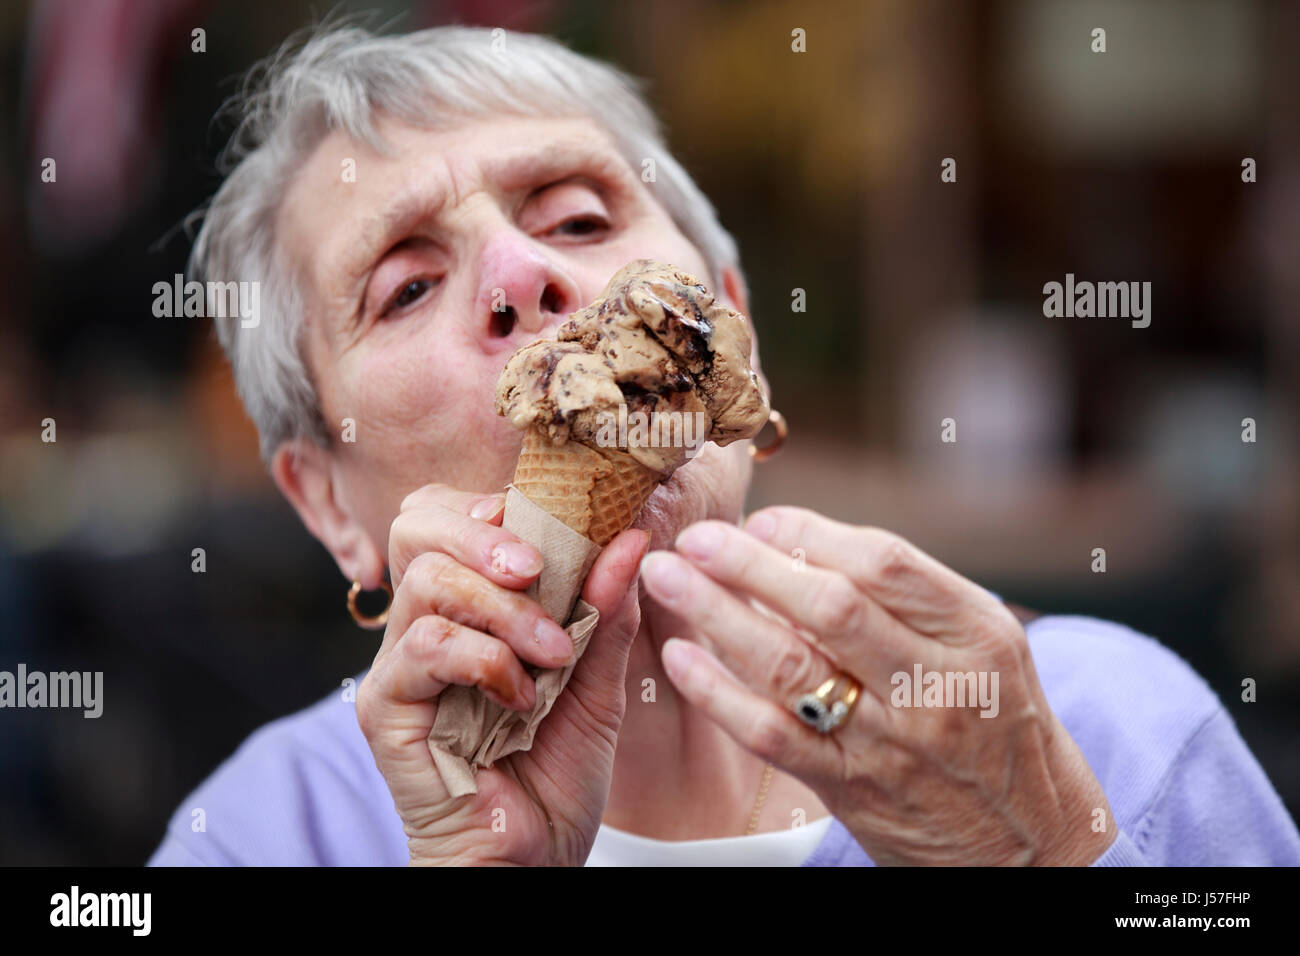 Belmar NJ, USA. Eine ältere Dame oder Seniorin genießt ein großes Eis in einem Kegel. Sie leckt das schmelzende Eis, bevor es aus dem Kegel fällt Stockfoto